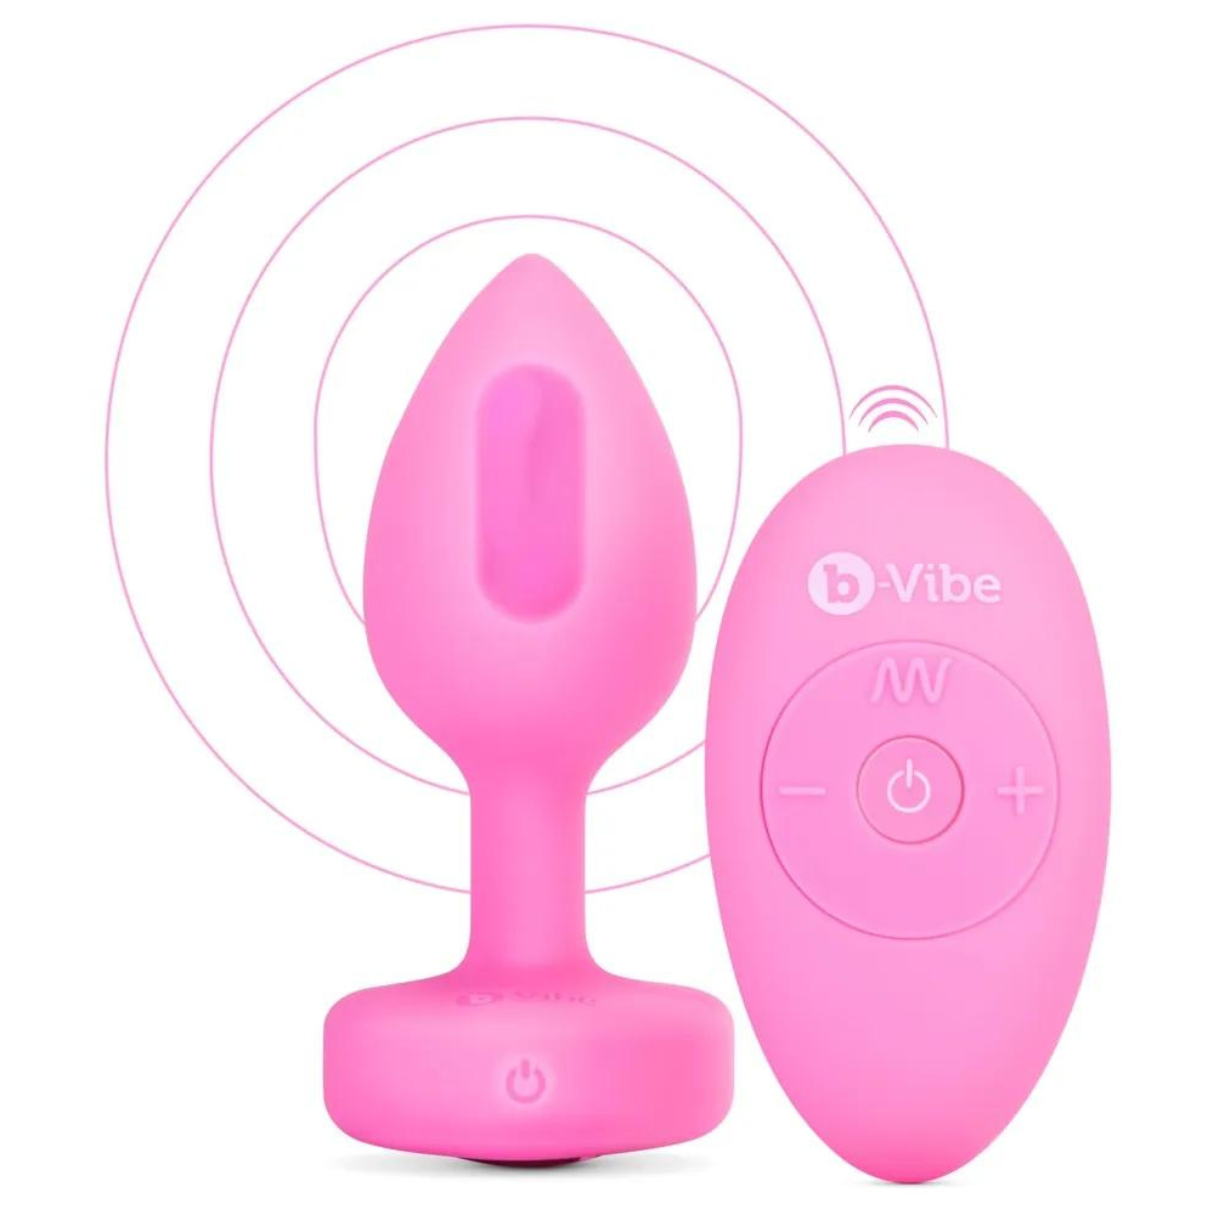 vibrating B-VIBE Vibrator heart